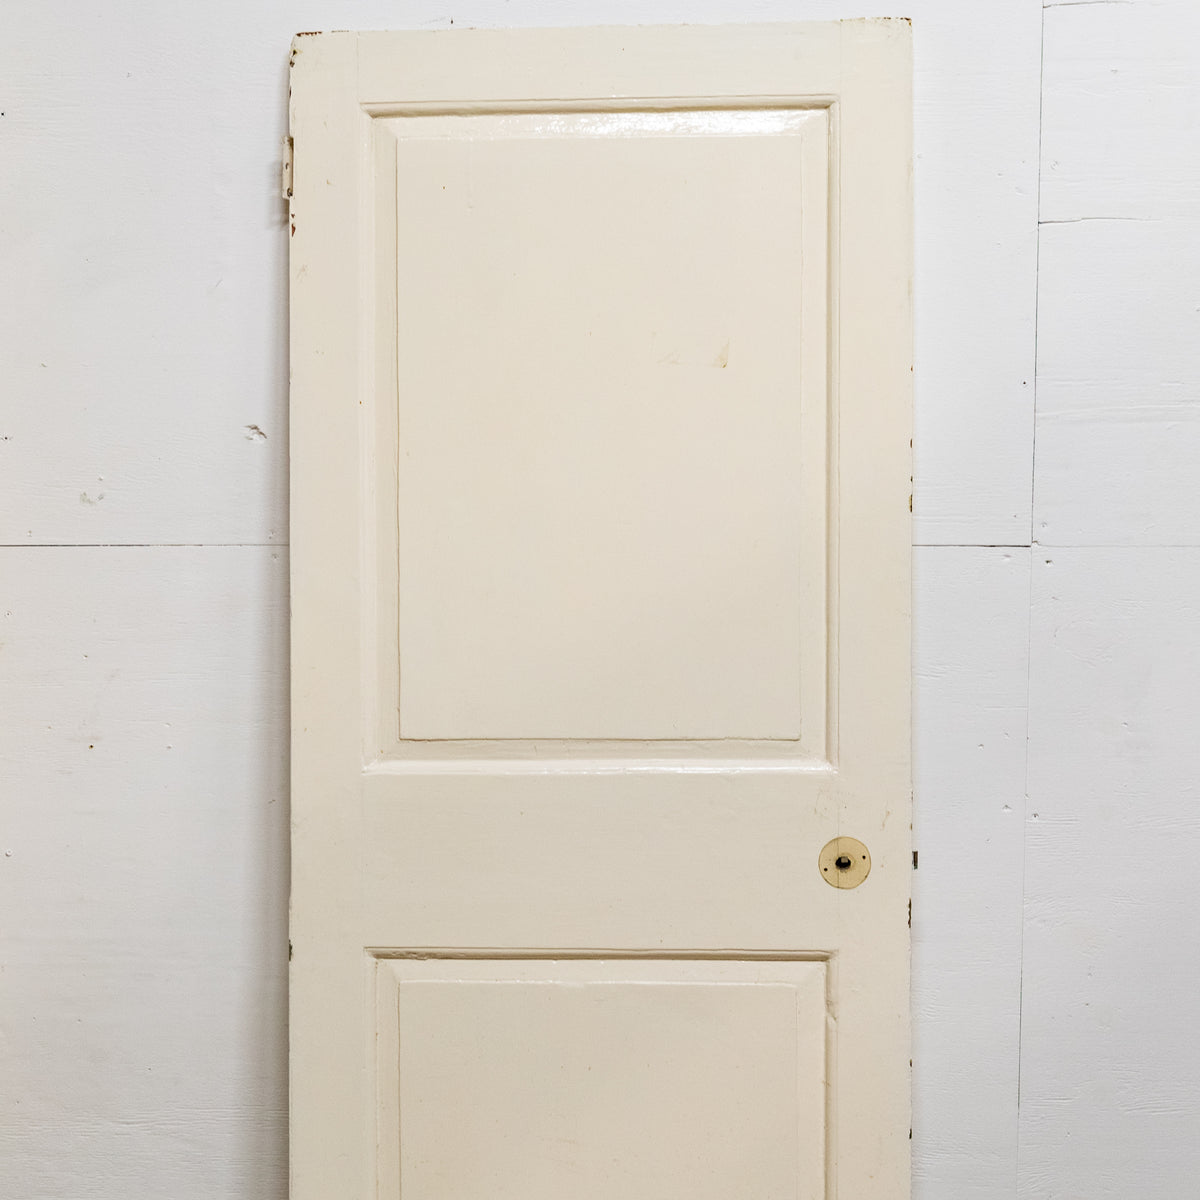 Antique Georgian 2 Panel Door - 185cm x 73.5cm | The Architectural Forum